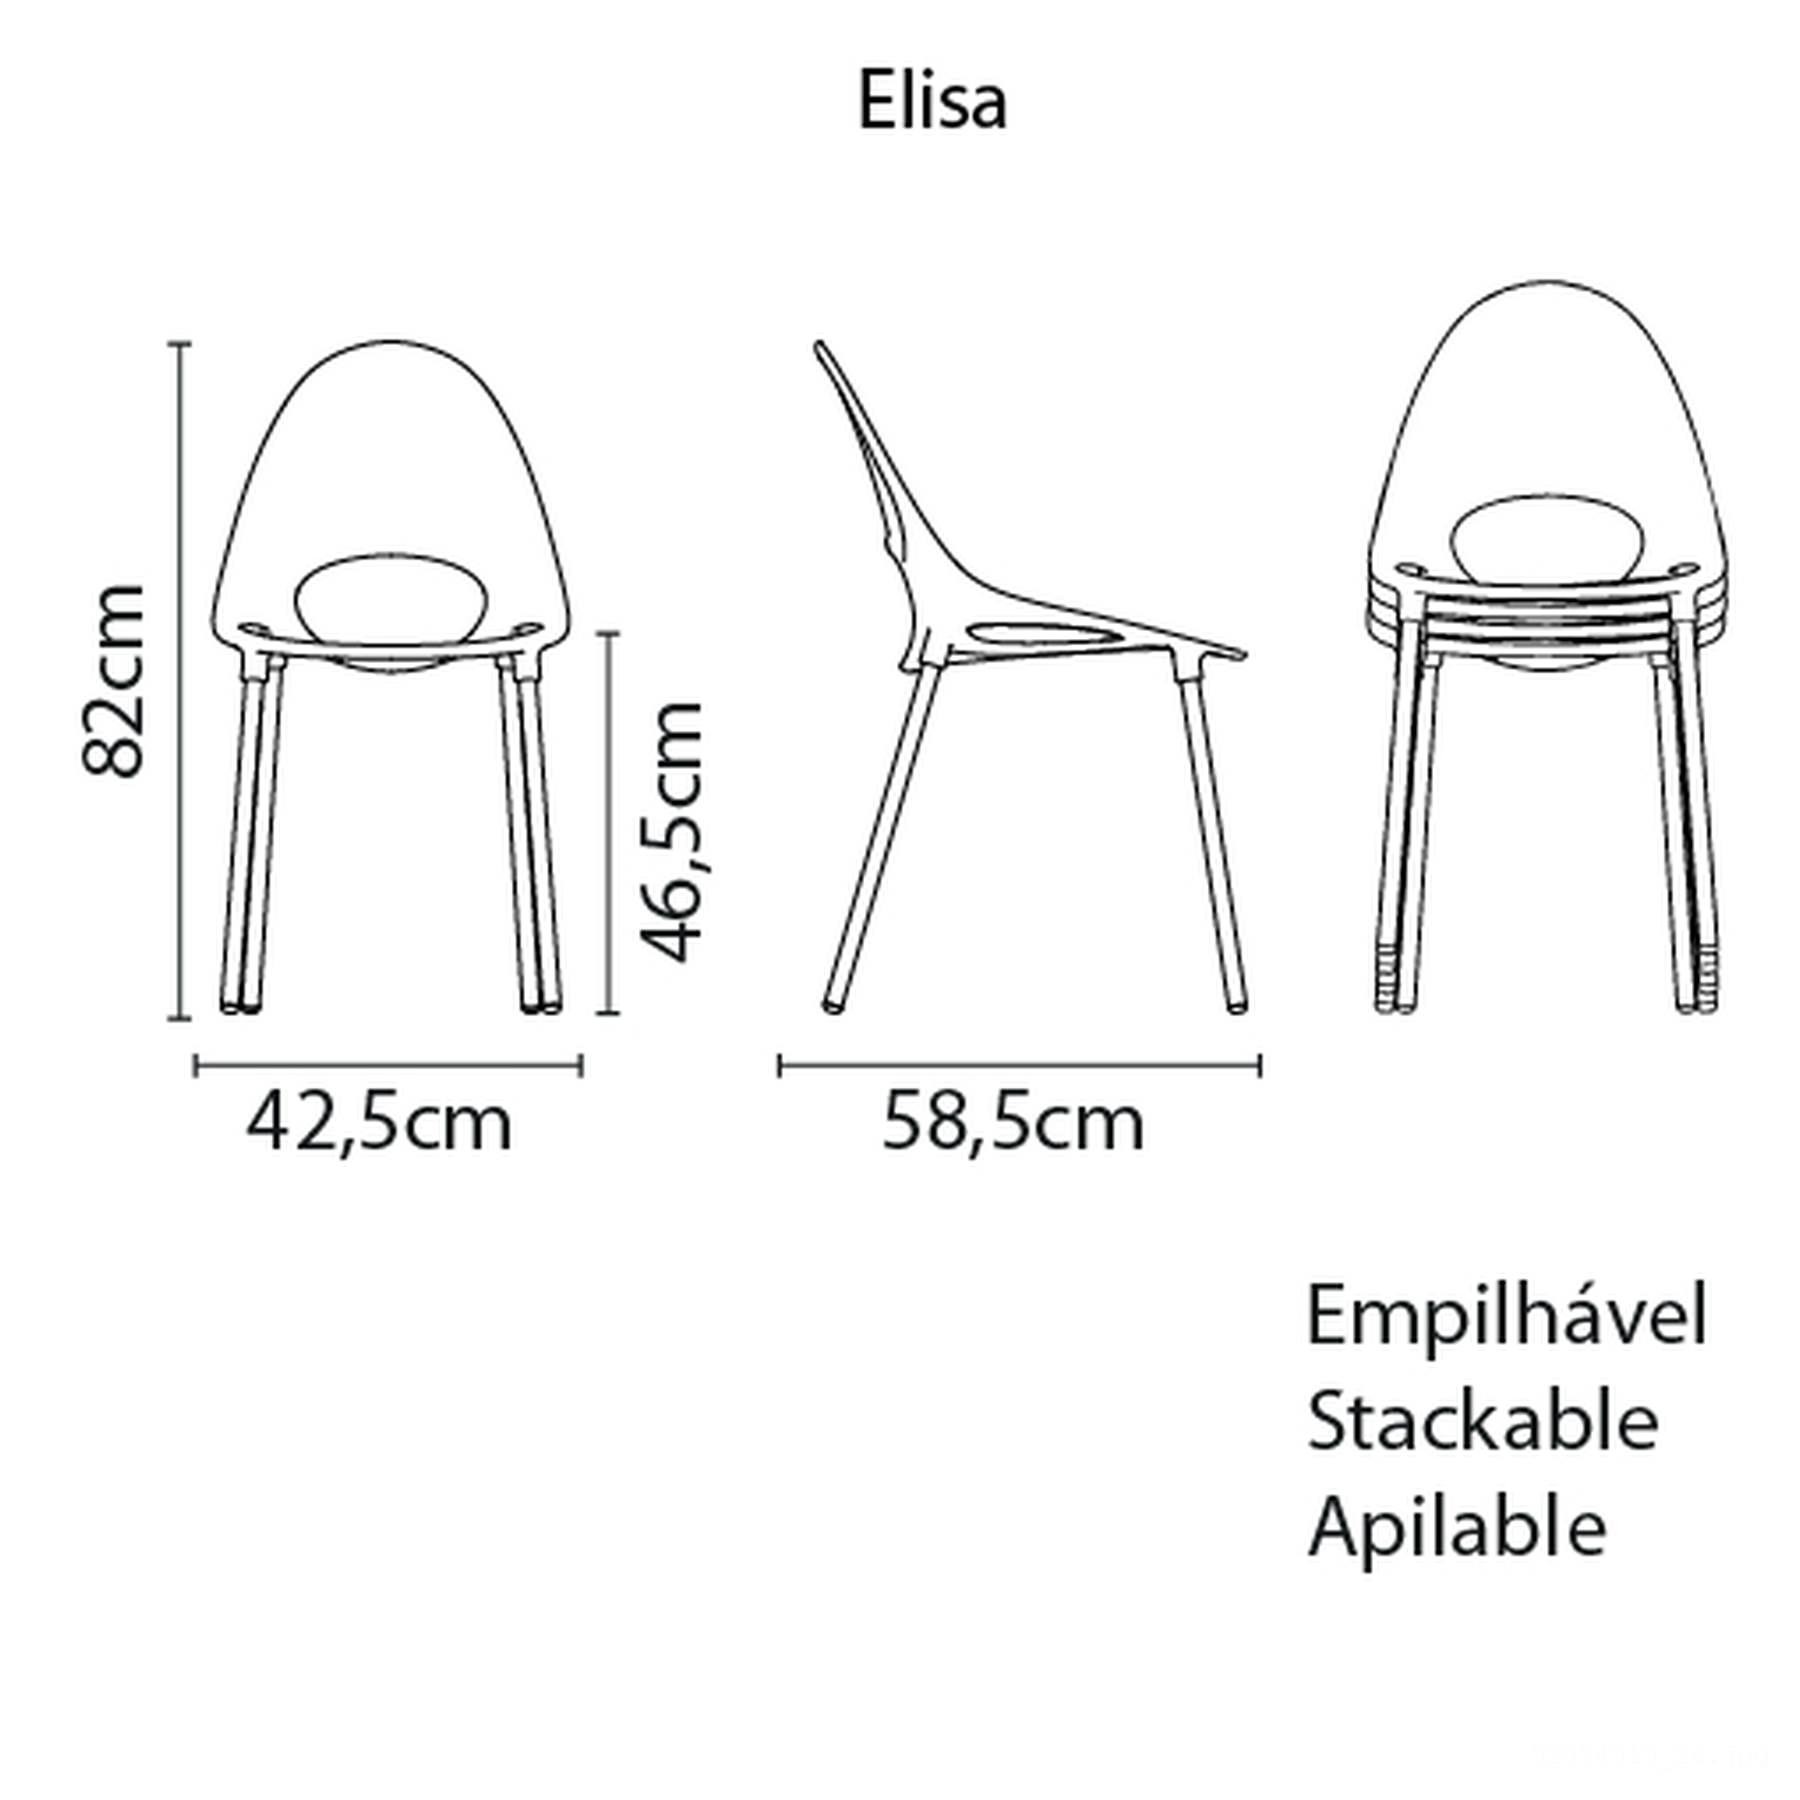 Cadeira Elisa Summa em Polipropileno Marrom com Pernas de Alumínio Anodizado